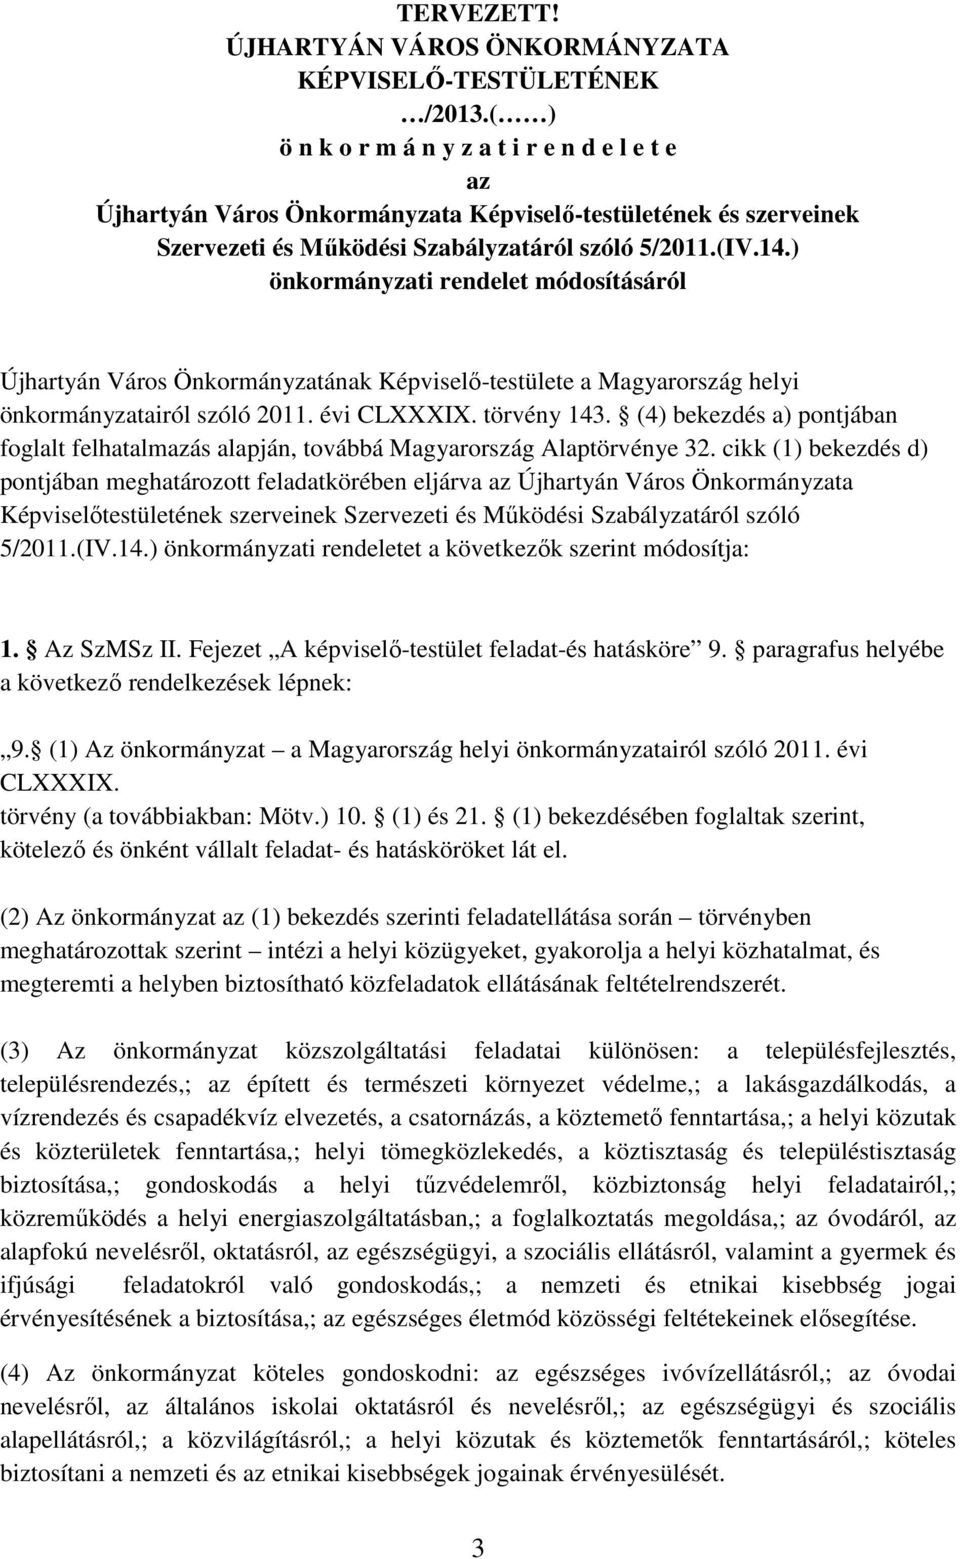 ) önkormányzati rendelet módosításáról Újhartyán Város Önkormányzatának Képviselő-testülete a Magyarország helyi önkormányzatairól szóló 2011. évi CLXXXIX. törvény 143.